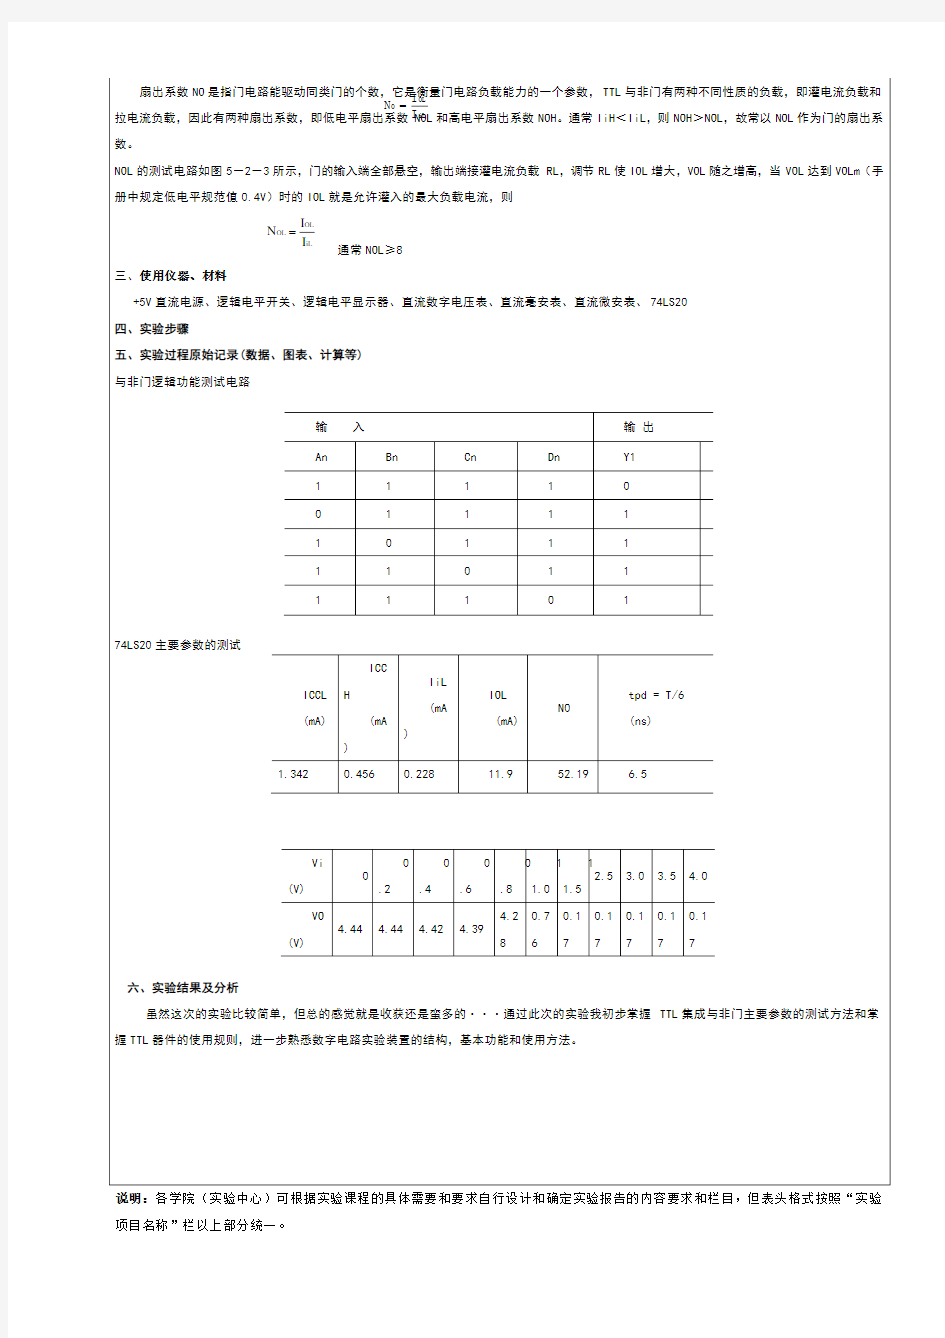 广州大学数电实验报告TTL集成逻辑门的逻辑功能与参数测试